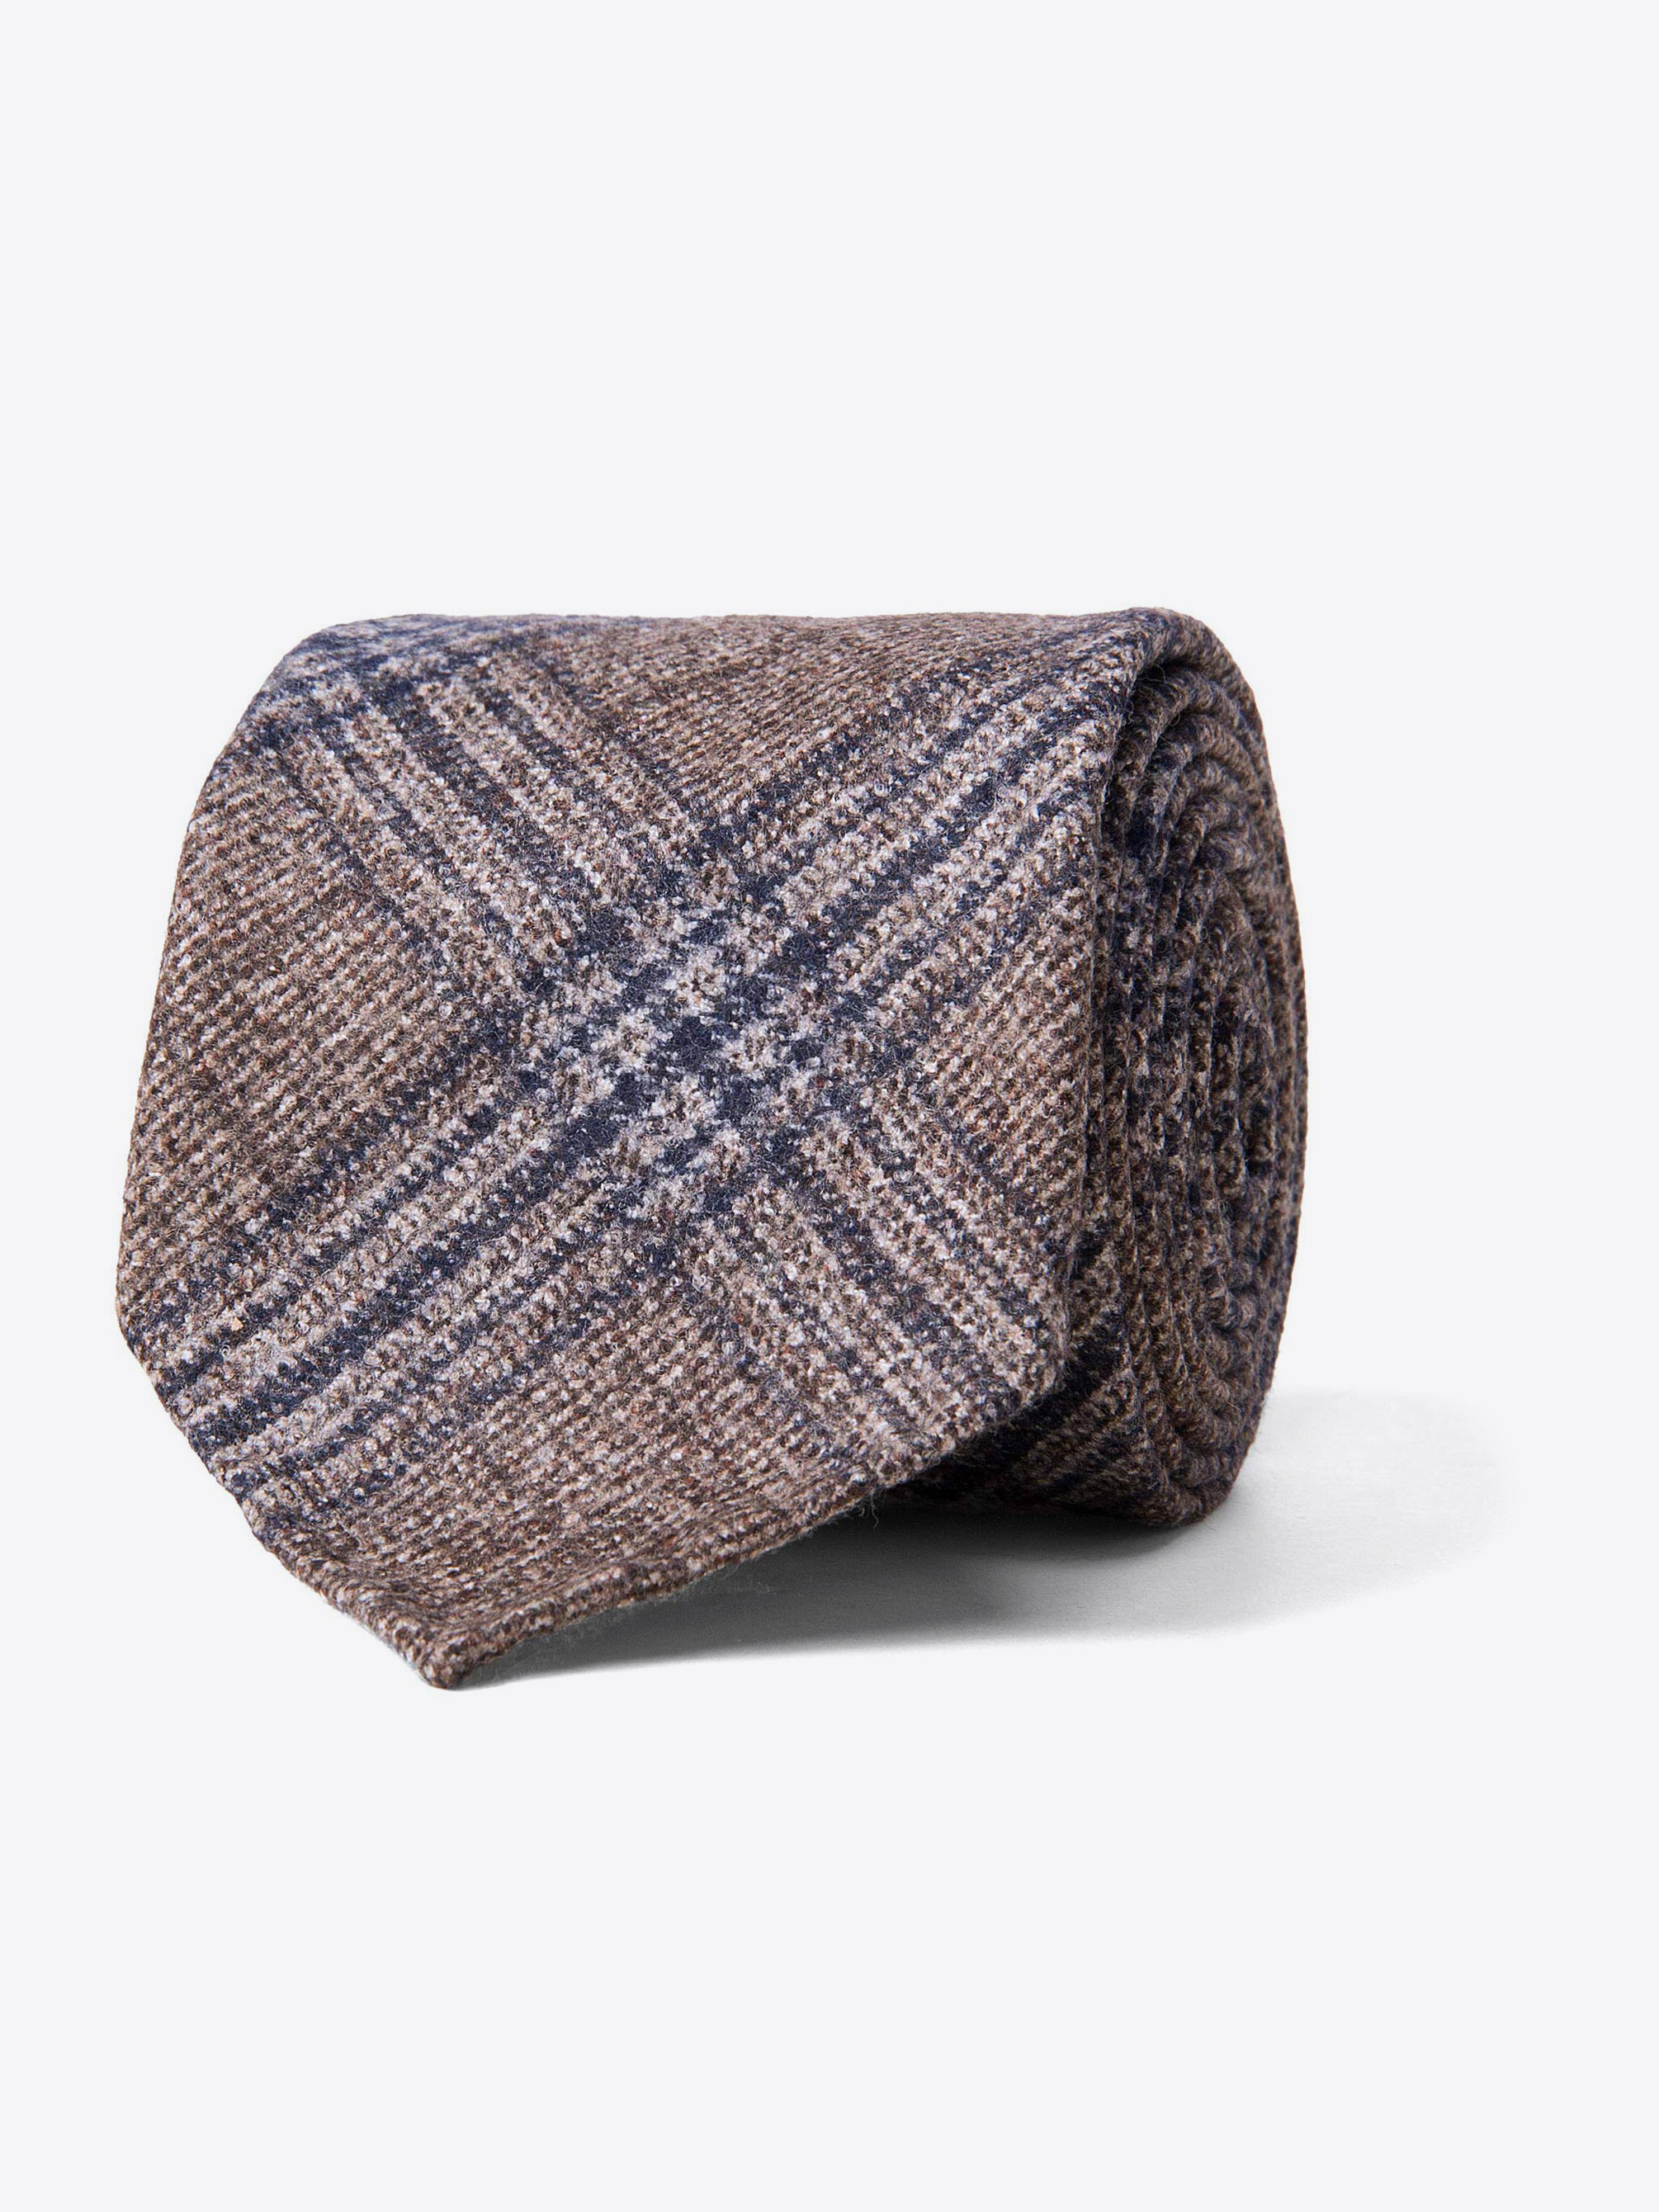 Zoom Image of Beige and Navy Wool Plaid Tie